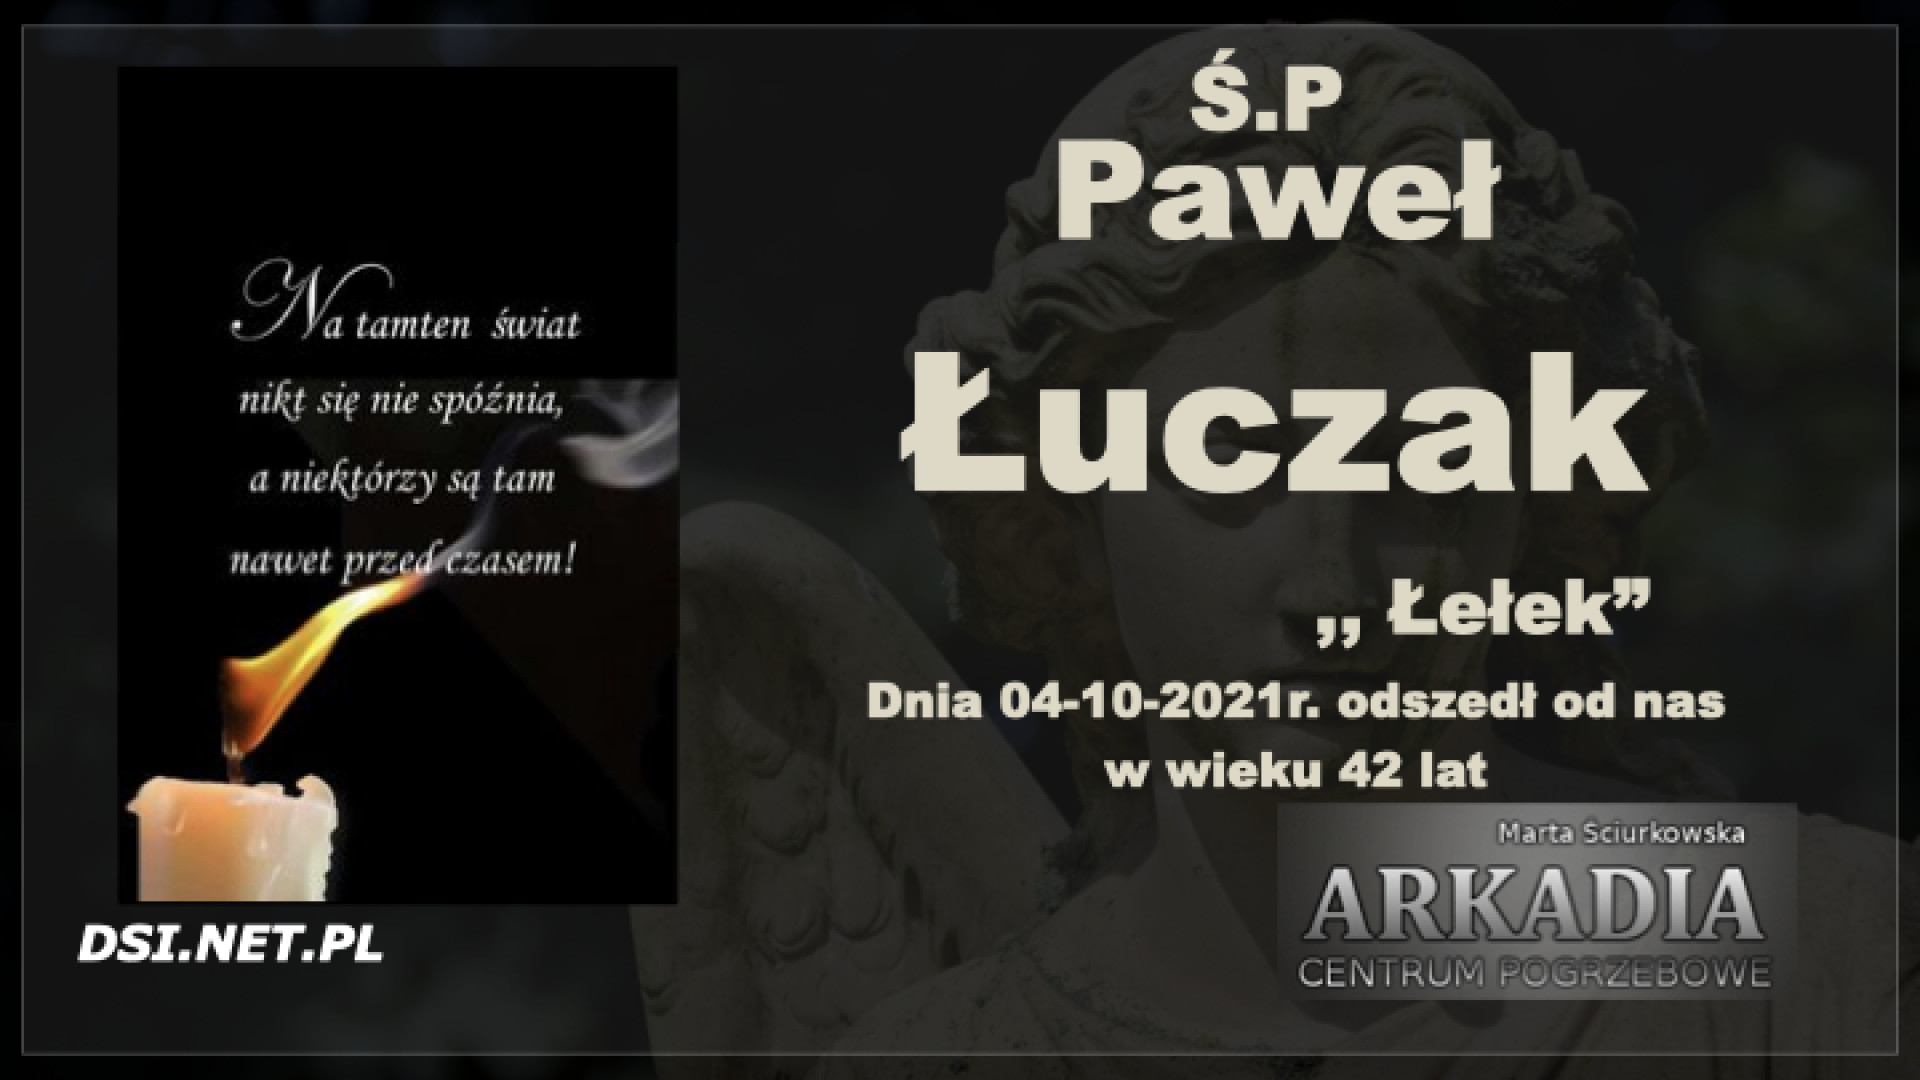 Ś.P. Paweł Łuczak